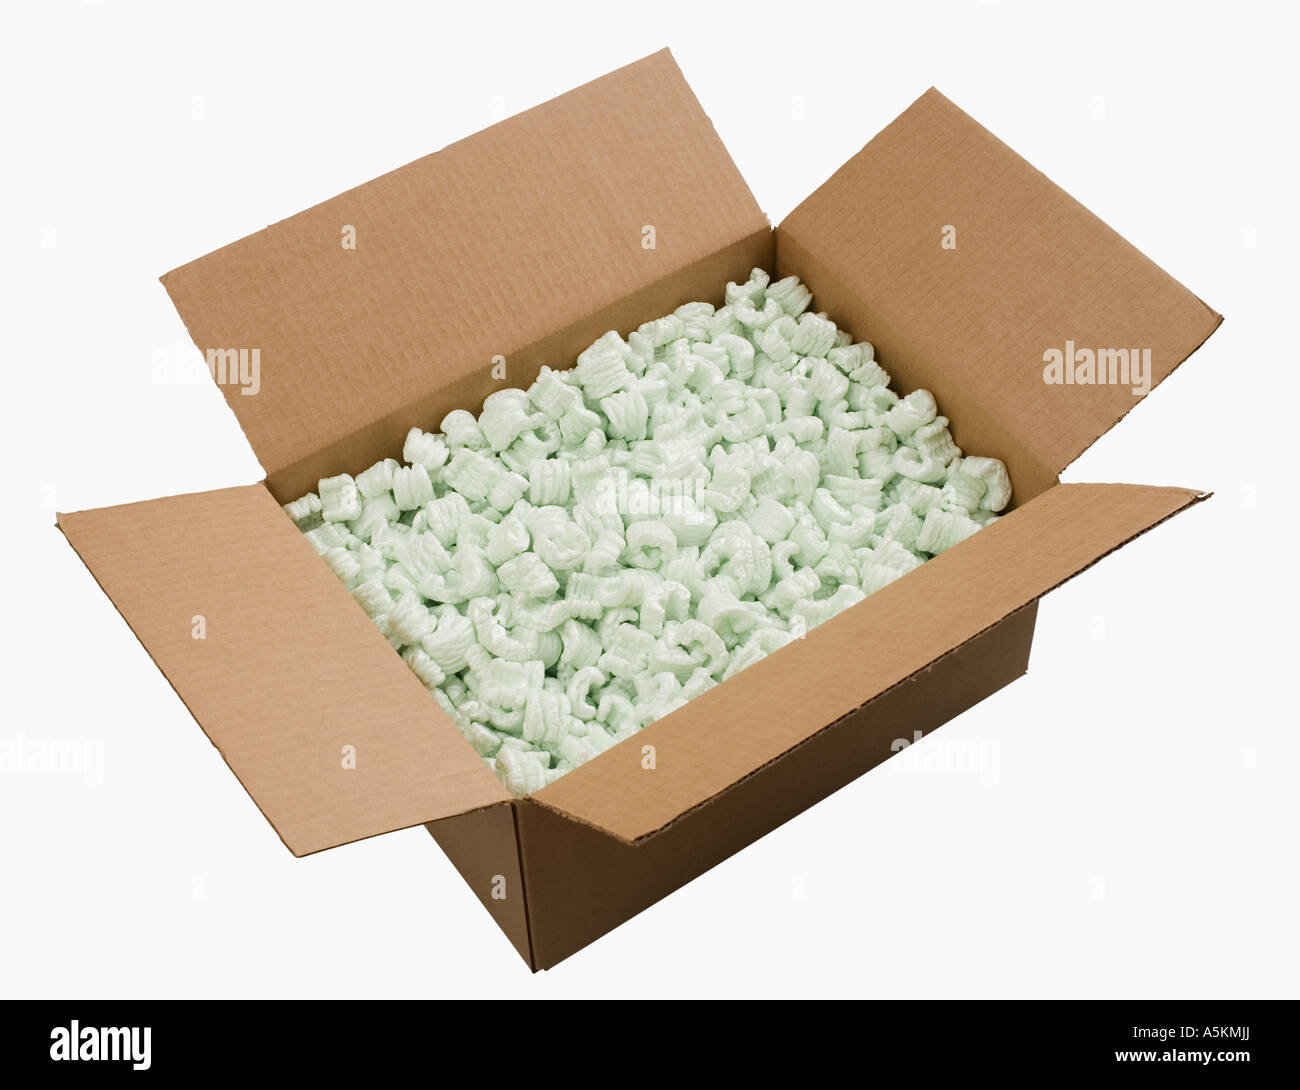 Aprire la scatola riempita con imballaggio arachidi Foto Stock